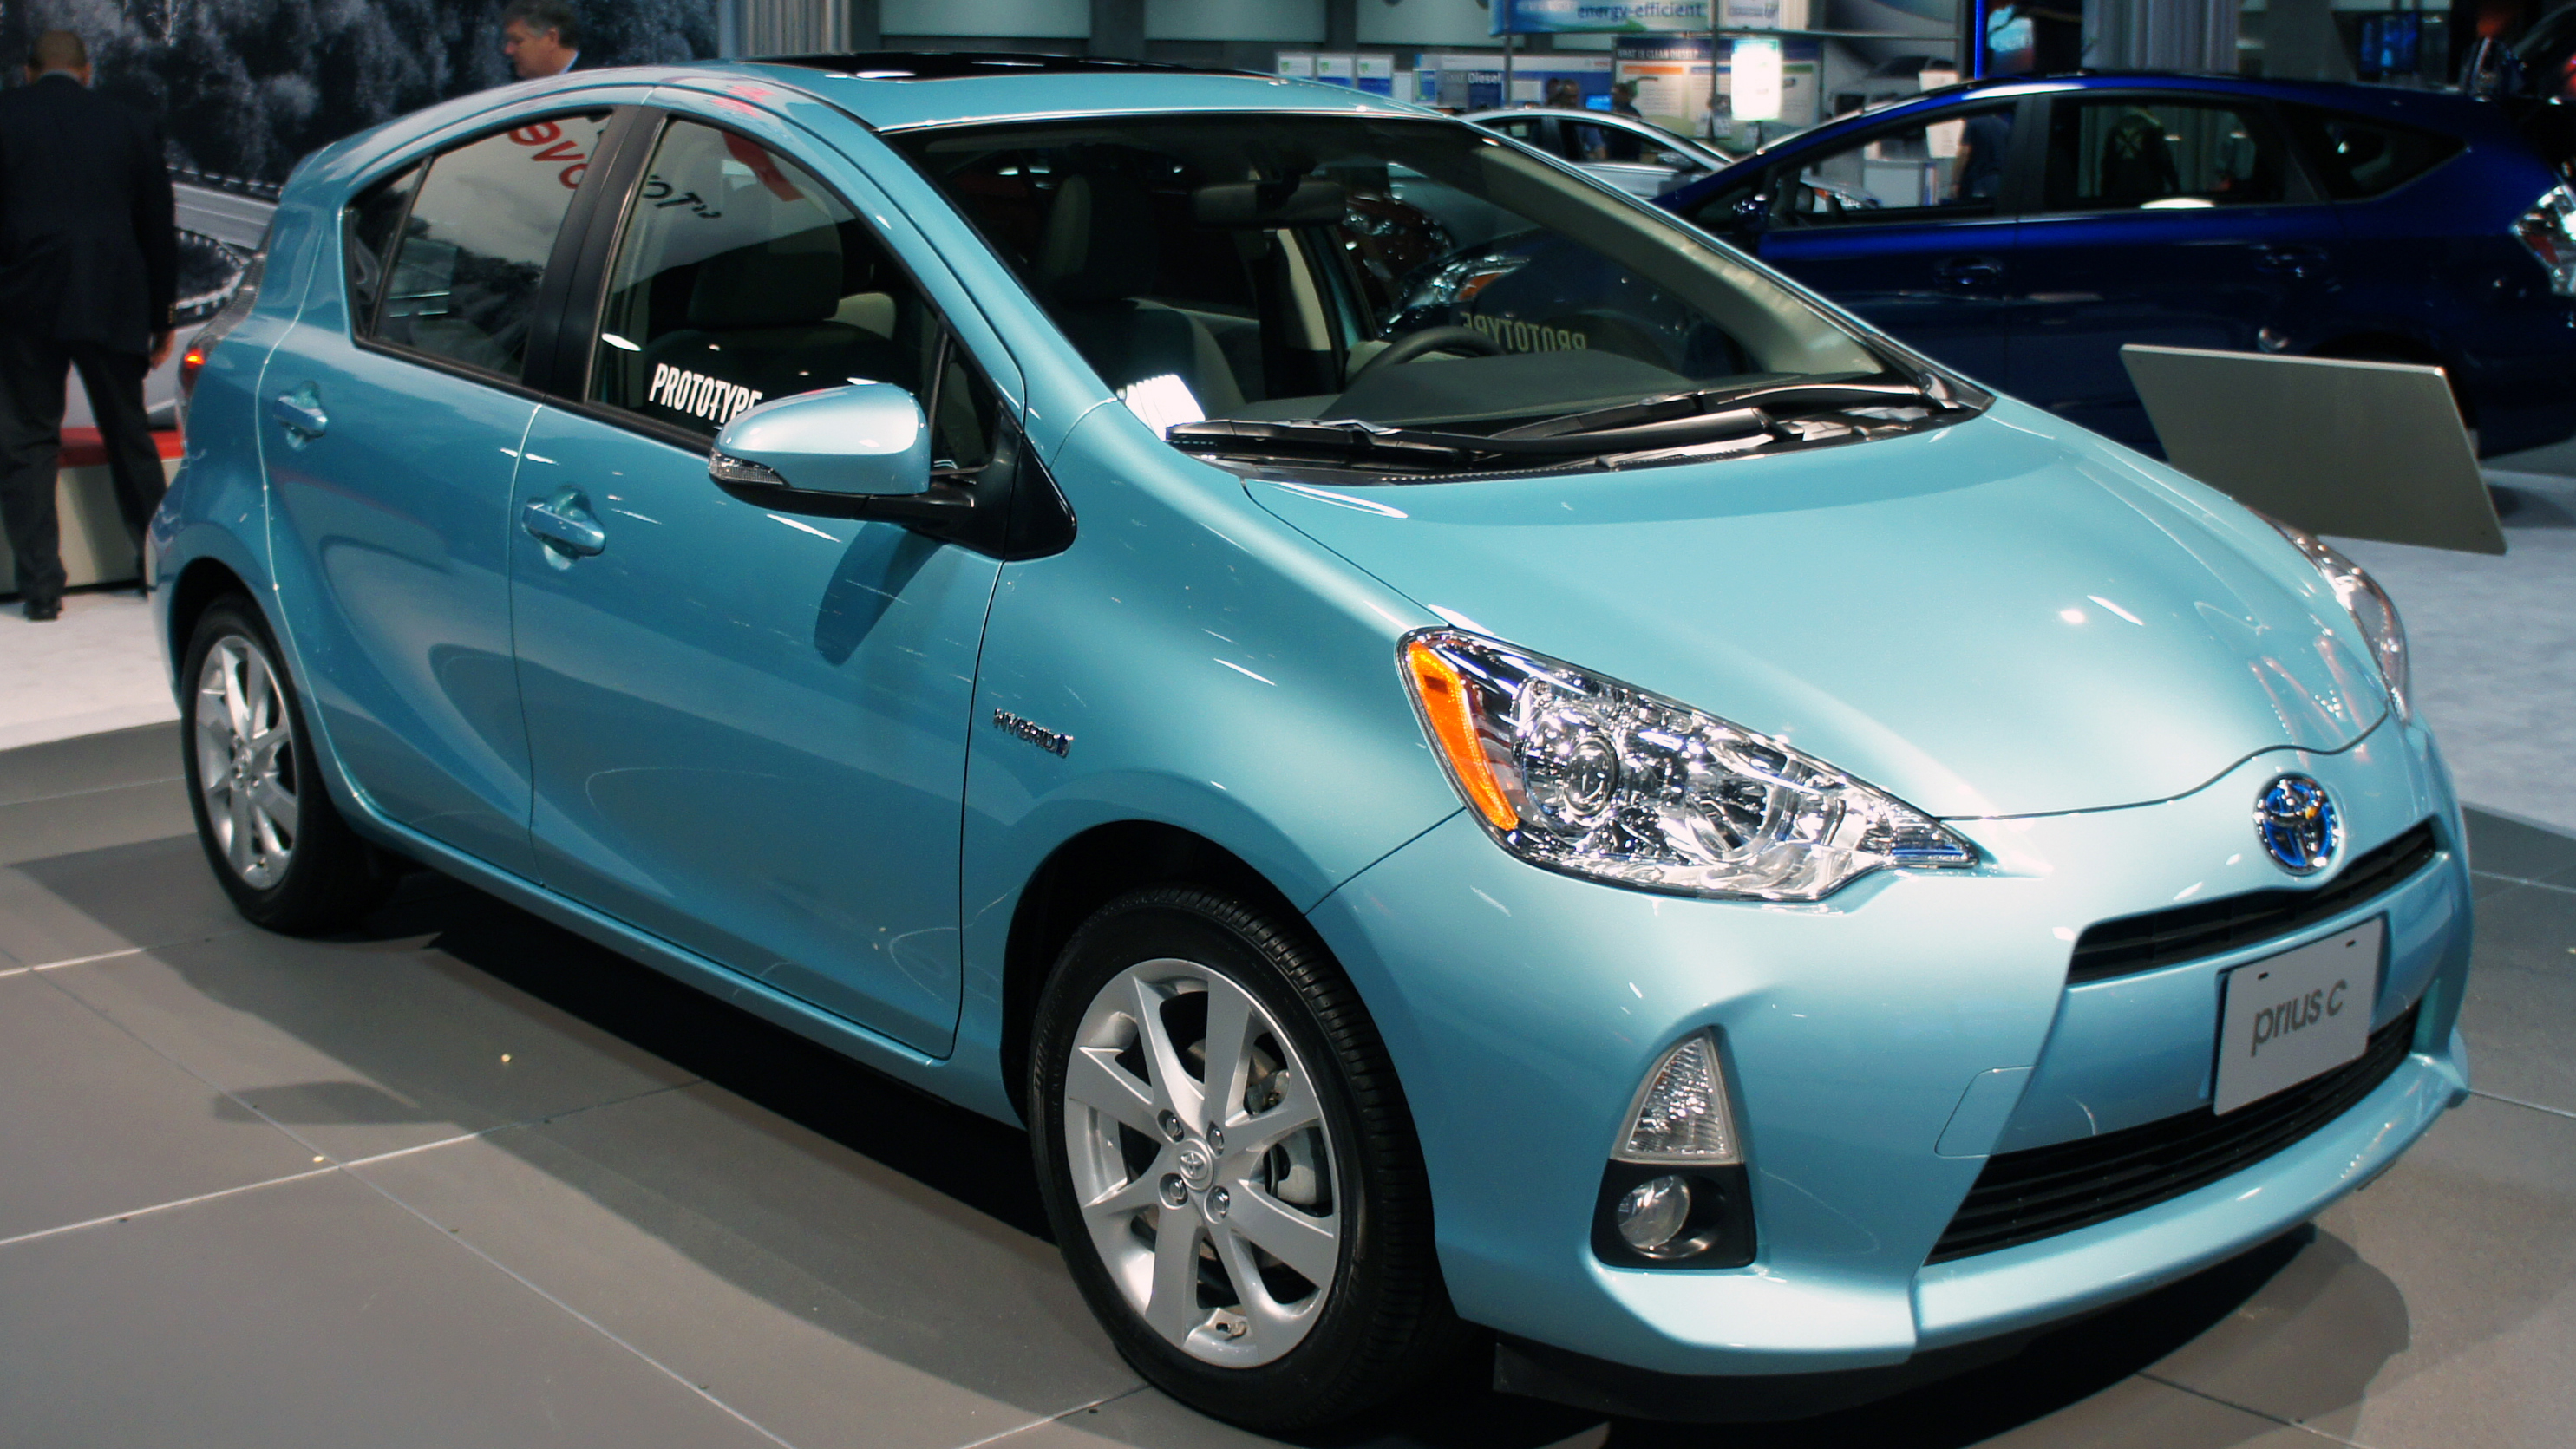 Bild von blauem Hybridauto, das auf einer Automesse präsentiert wird.